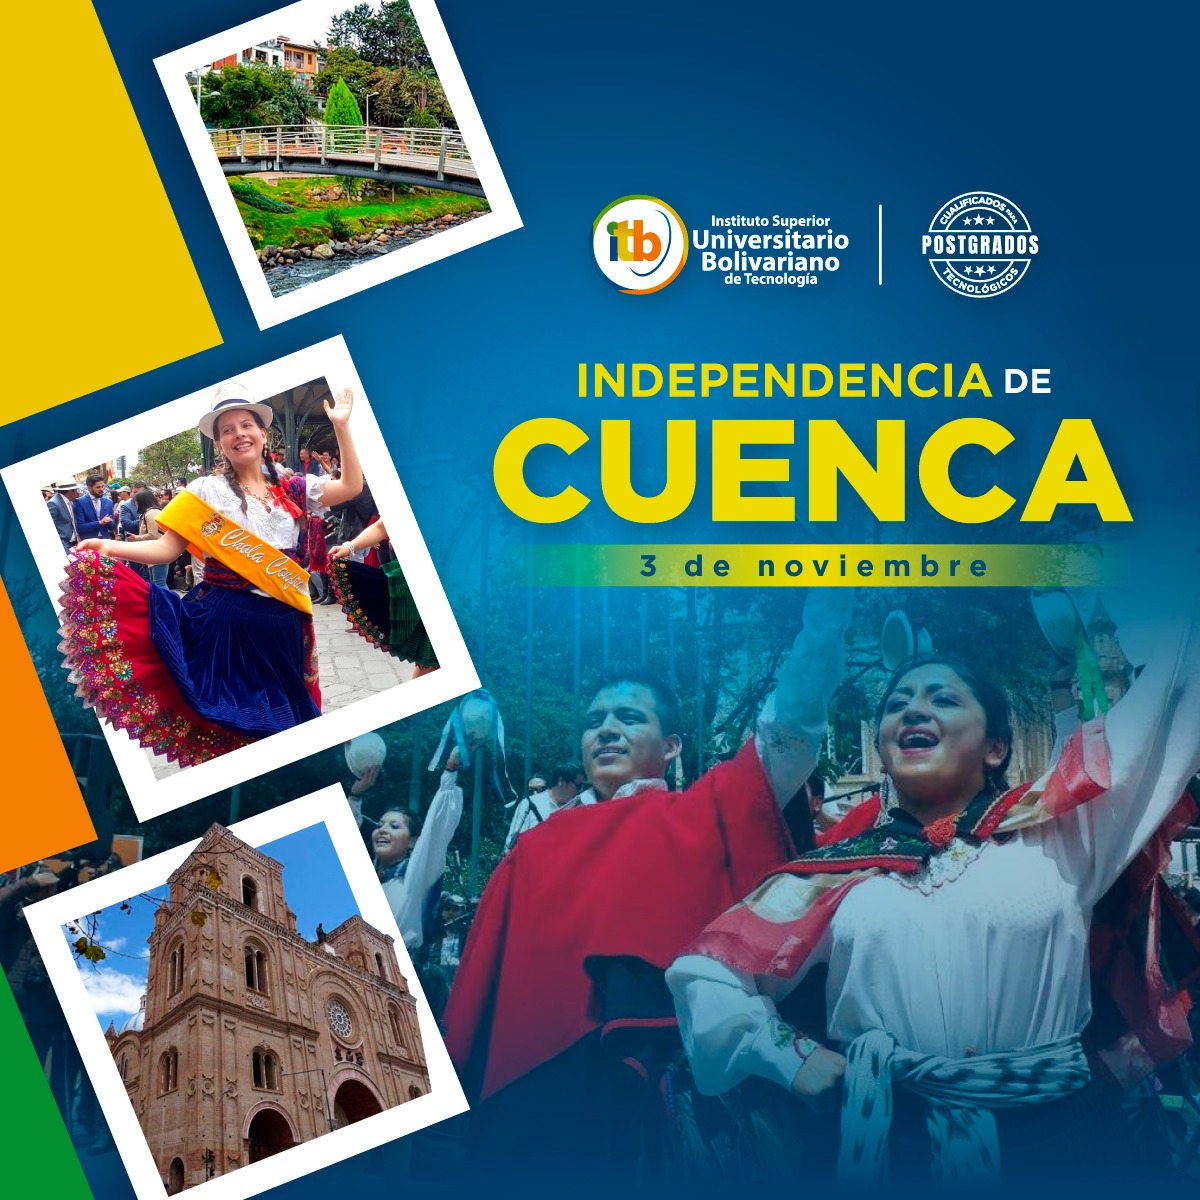 Conmemoramos con respeto y admiración los 203 años de Independencia de la hermosa ciudad de Cuenca.